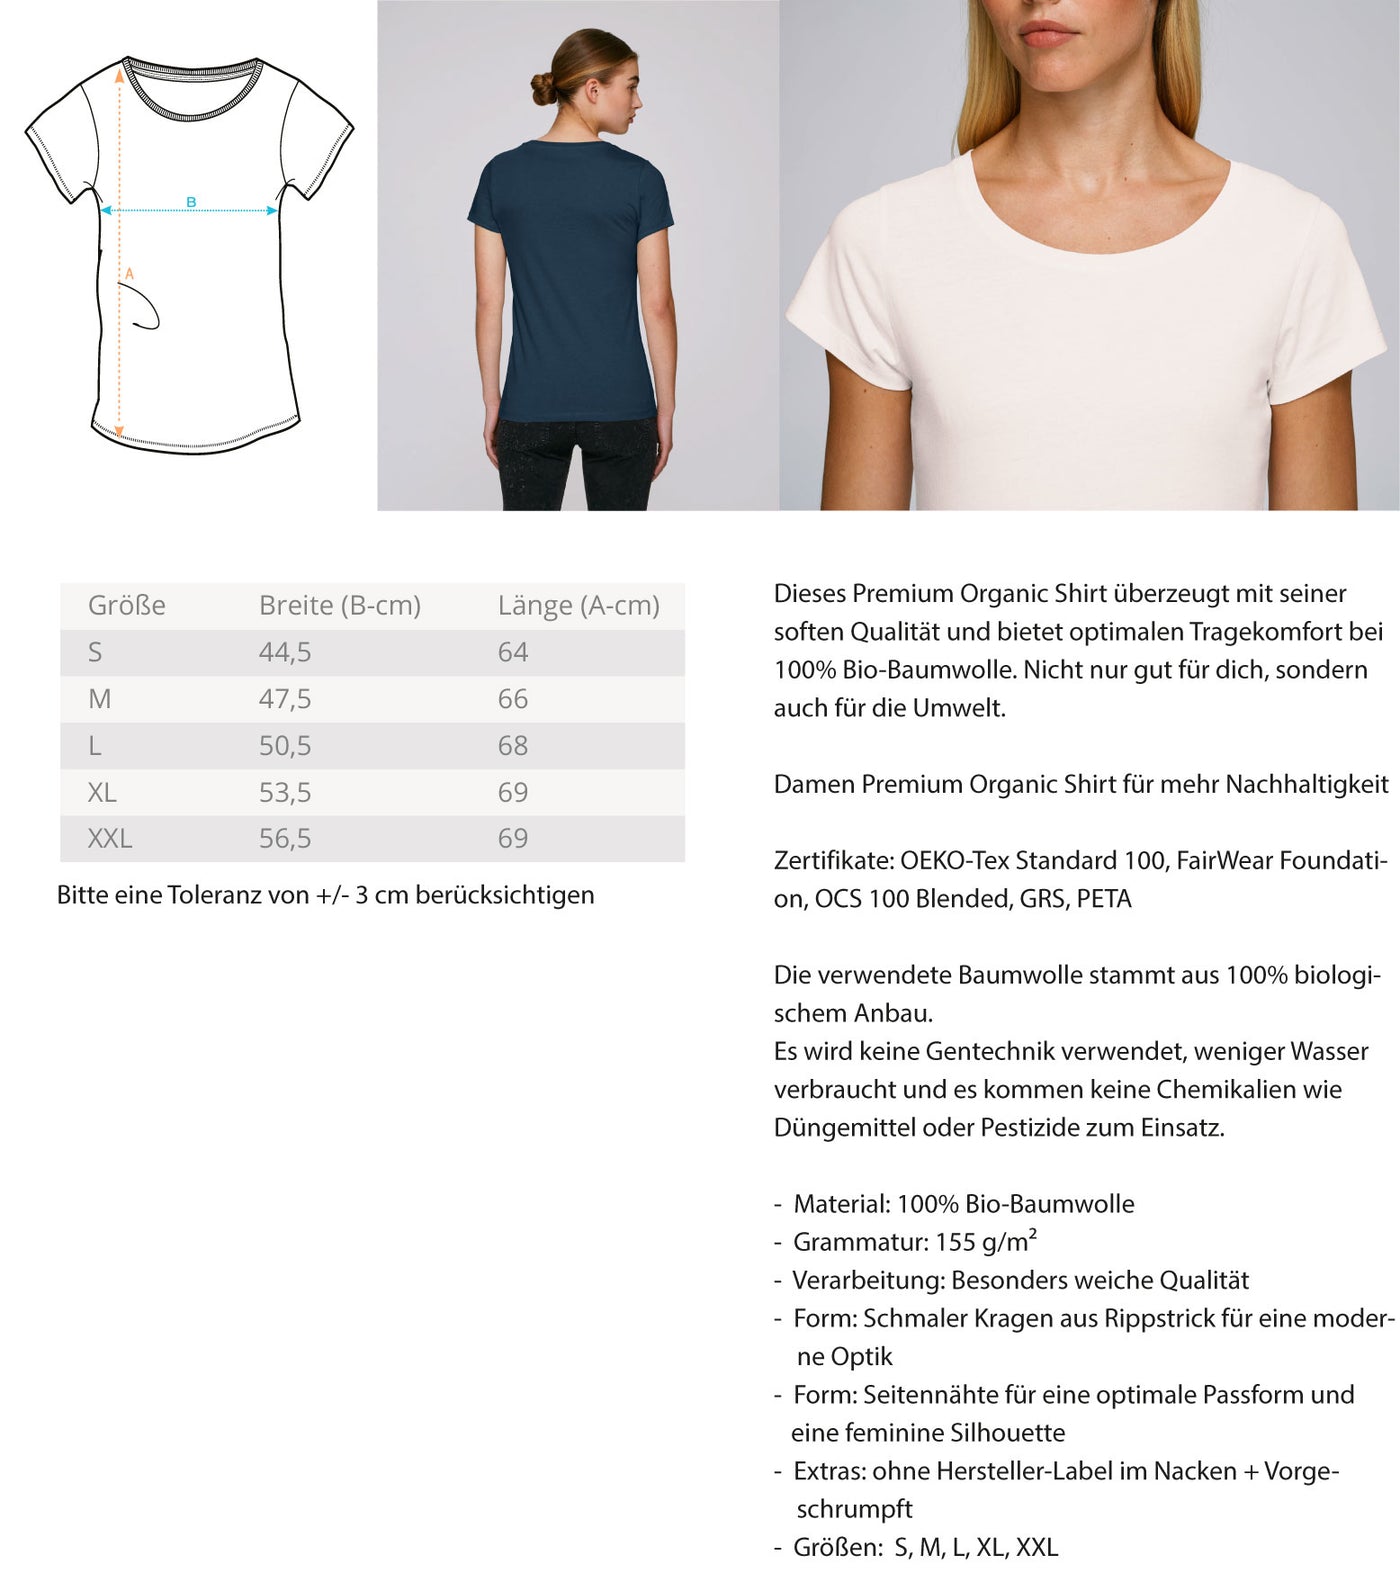 Alpensteinbock auf Berg - Damen Premium Organic T-Shirt berge klettern wandern